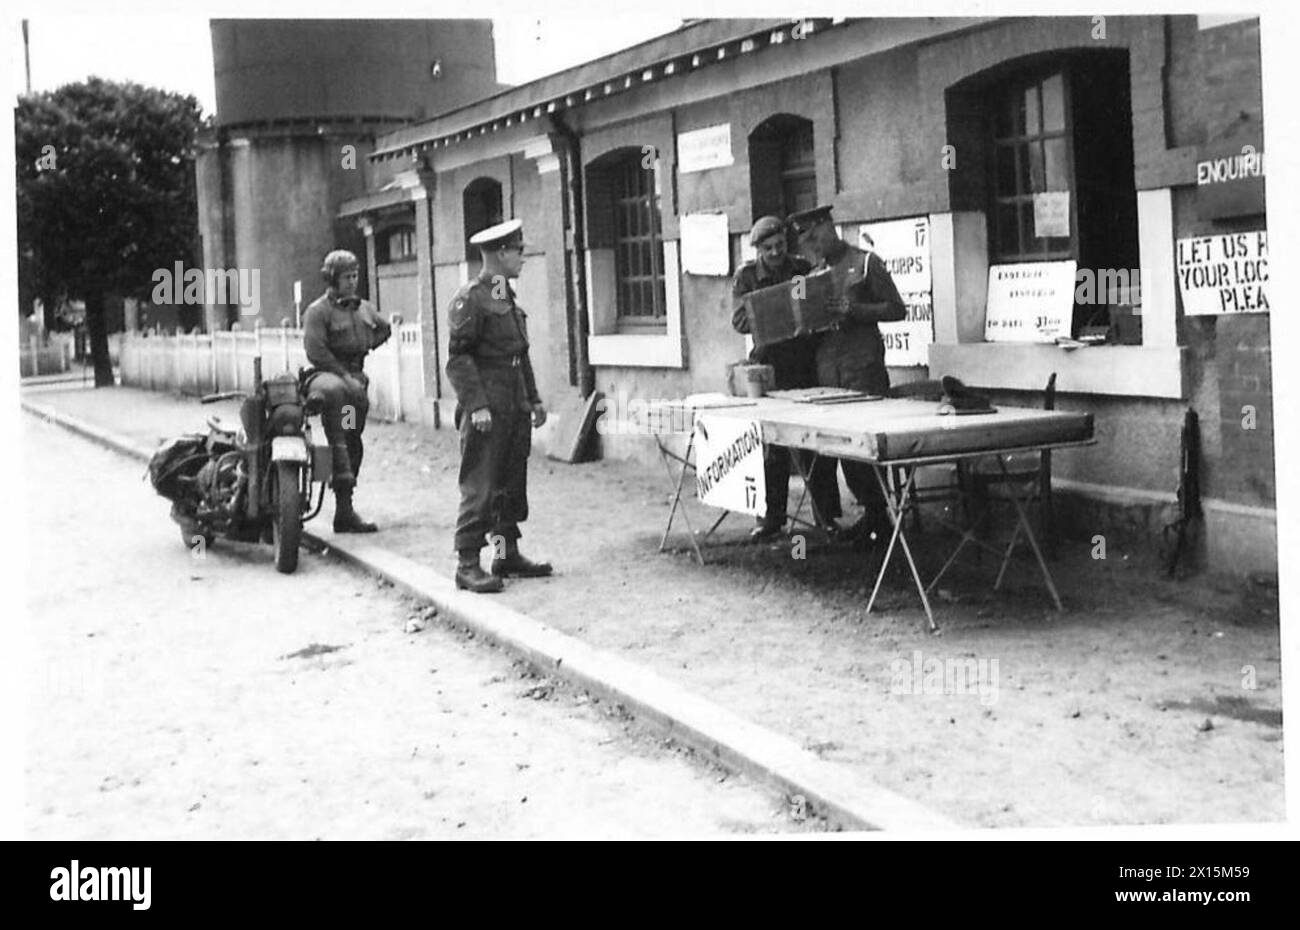 DIE MILITÄRPOLIZEI NUTZT DIE BAYEUX-STATION, Eine Szene im Bayeux-Bahnhofshof, die heute von der Militärpolizei als Informationsbüro genutzt wird. L/Corporal F. Everard von 46 Market Hill, Malden, Essex, und Corporal A. Thomson von 52 Valley Road, London, SW16. Fahrzeug der 4. A/Brigade aufgestellt. 113. Provost Coy, britische Armee, 21. Armeegruppe Stockfoto